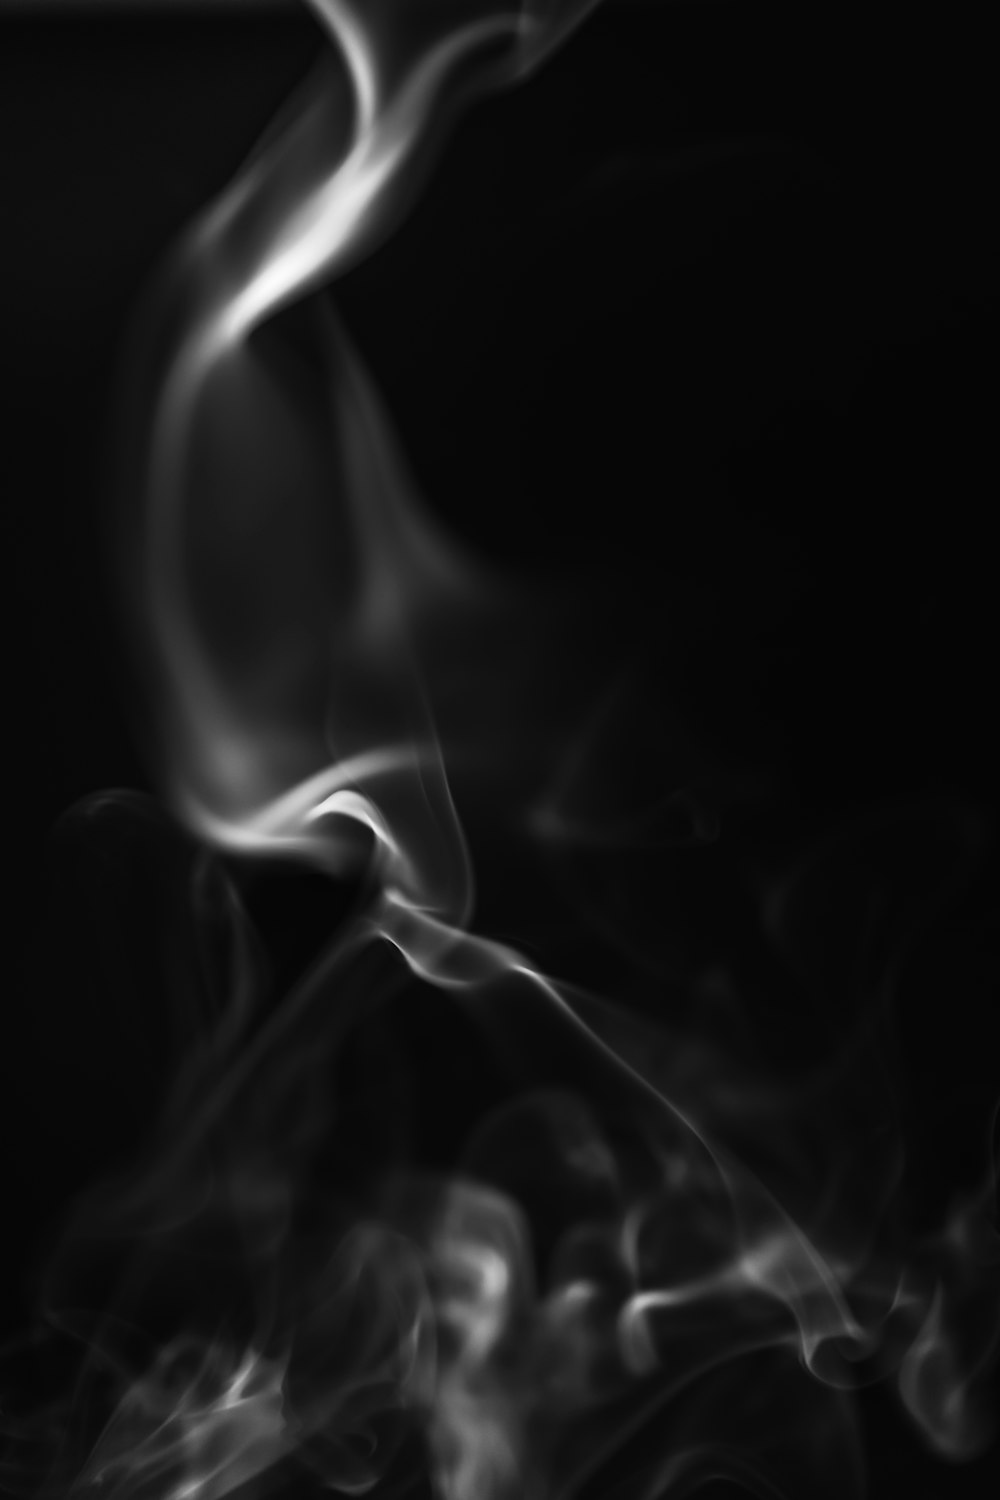 100+ Black Smoke Pictures - hình nền đen: Bạn đang đam mê sử dụng những hình ảnh độc đáo để tạo ra những thước phim và ảnh đẹp? Hãy tìm hiểu ngay bộ sưu tập hình ảnh đen phù hợp với bạn. Với những hình ảnh khói đen bắt mắt, bạn sẽ tìm thấy rất nhiều ý tưởng để sáng tạo và thể hiện tài năng của mình.